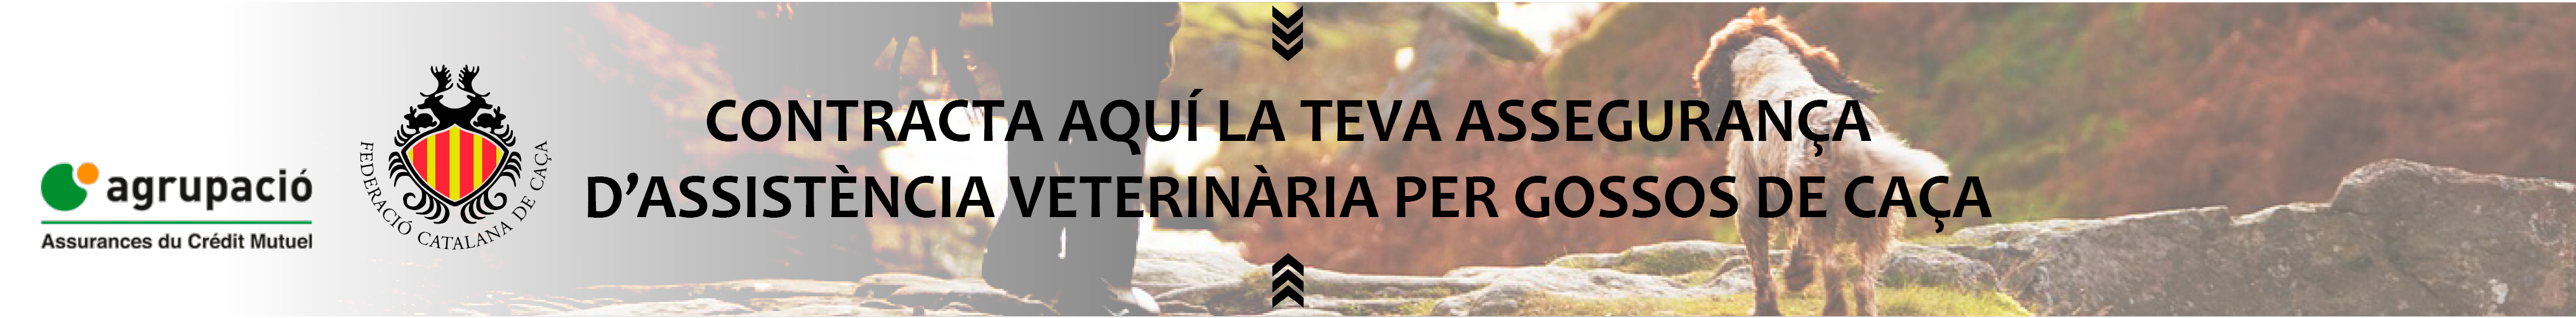 Assegurança d'assistència veterinària per gosssos de caça Catalana de Caça